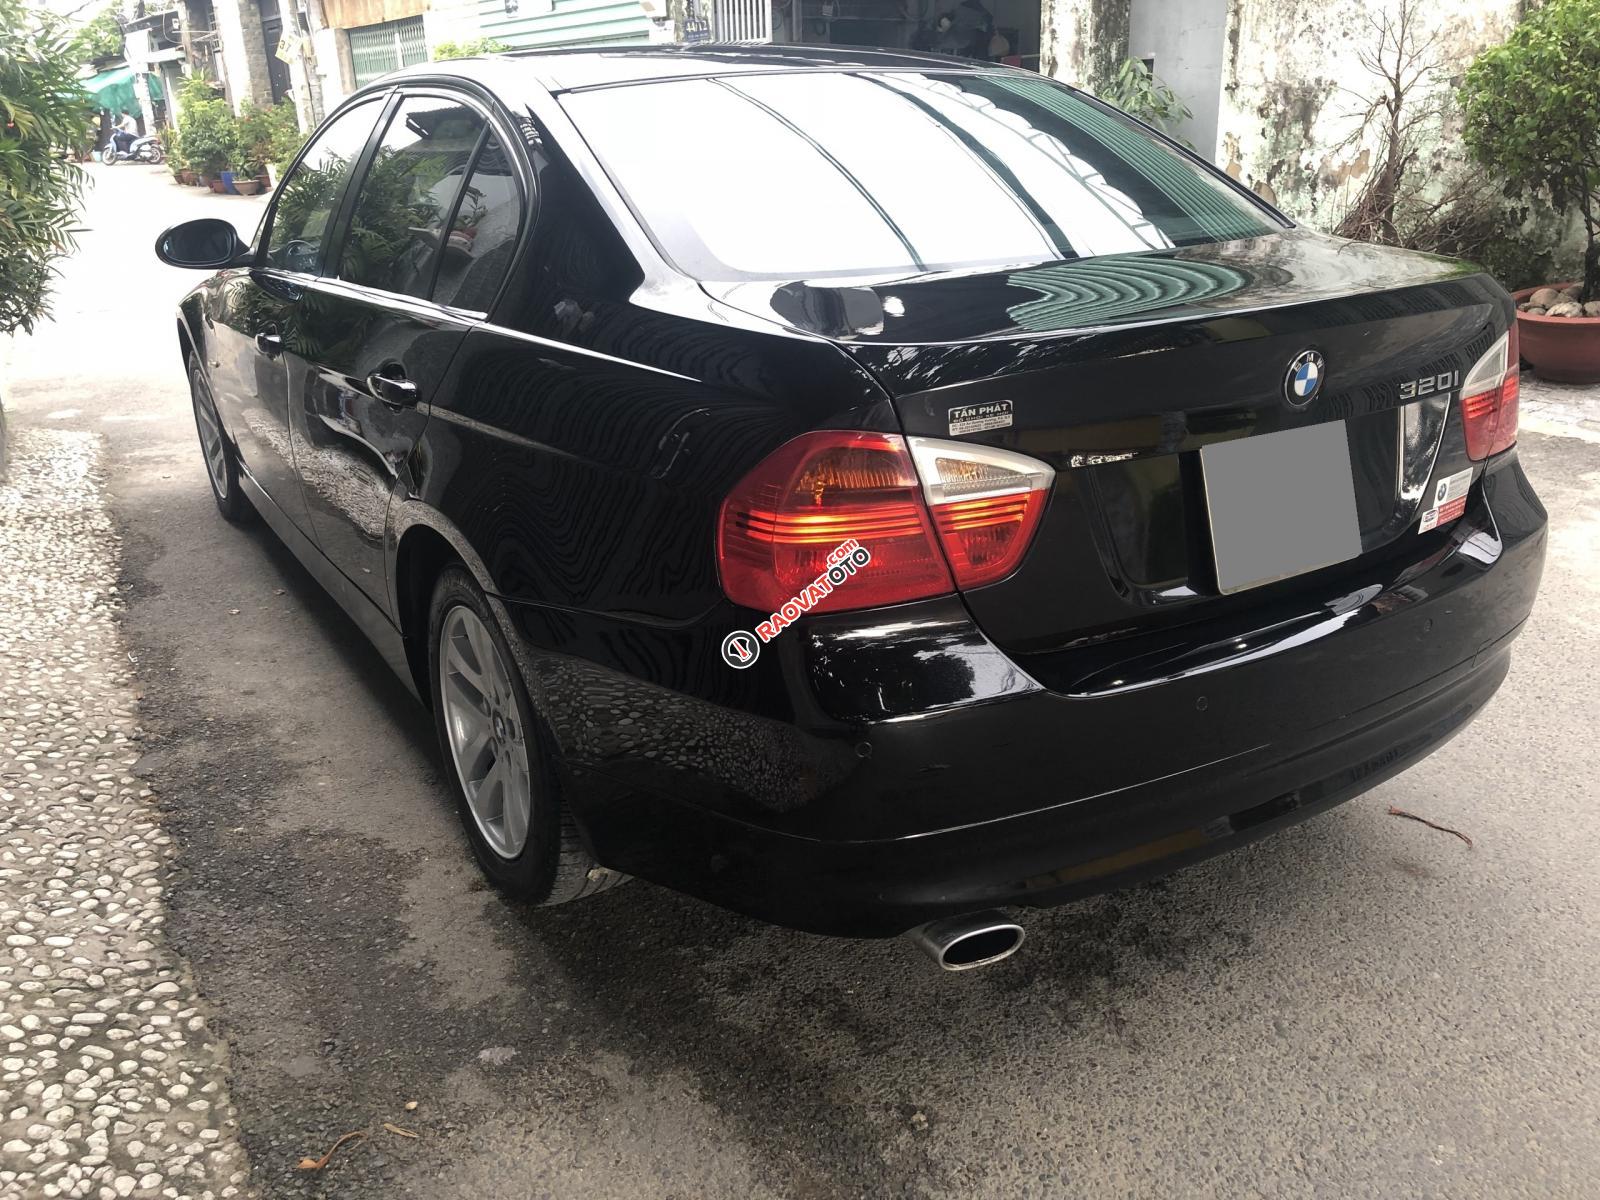 Bán BMW 320i 2008 tự động màu đen sang trọng cực kỳ.-11